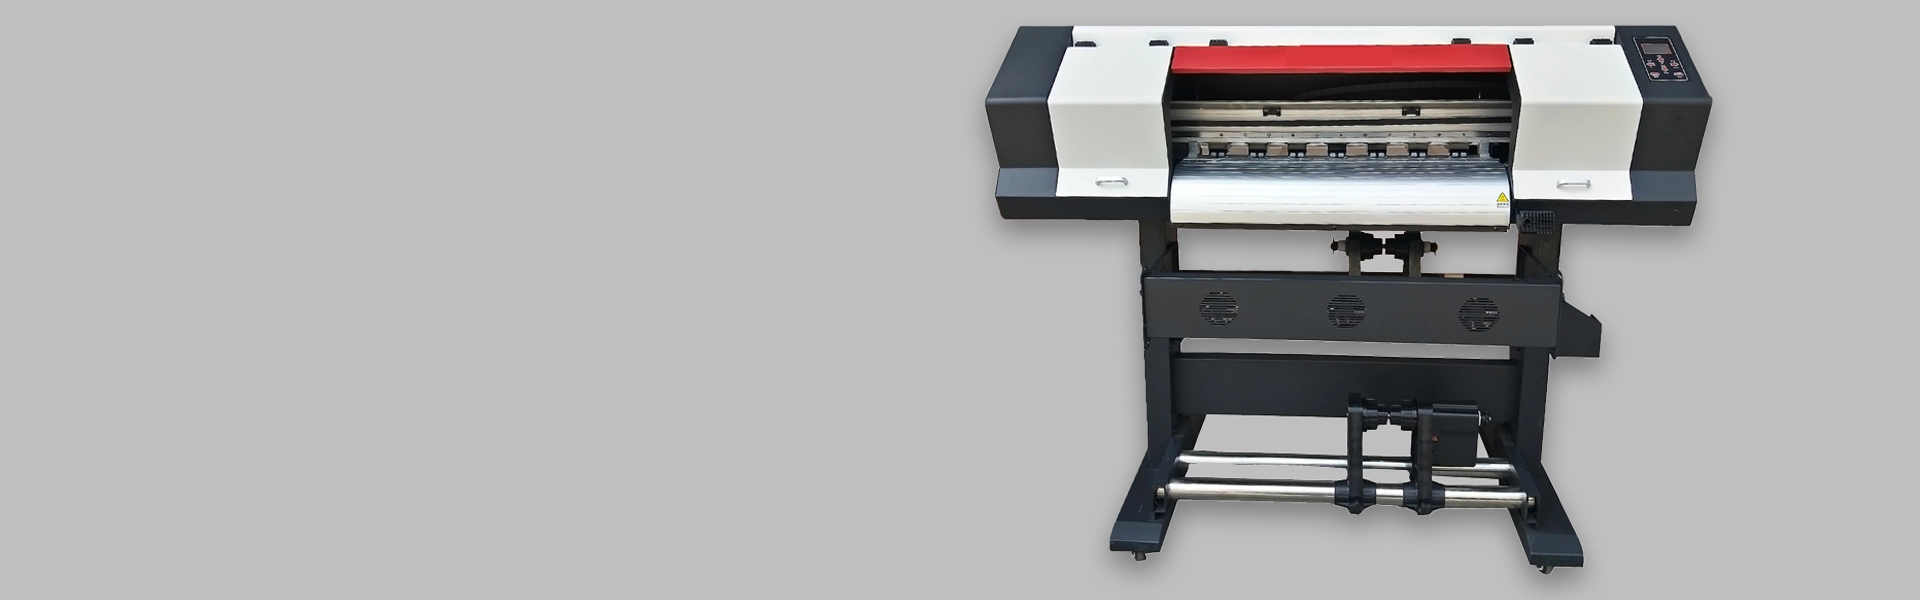 Impressora de sublimação de 70 cm